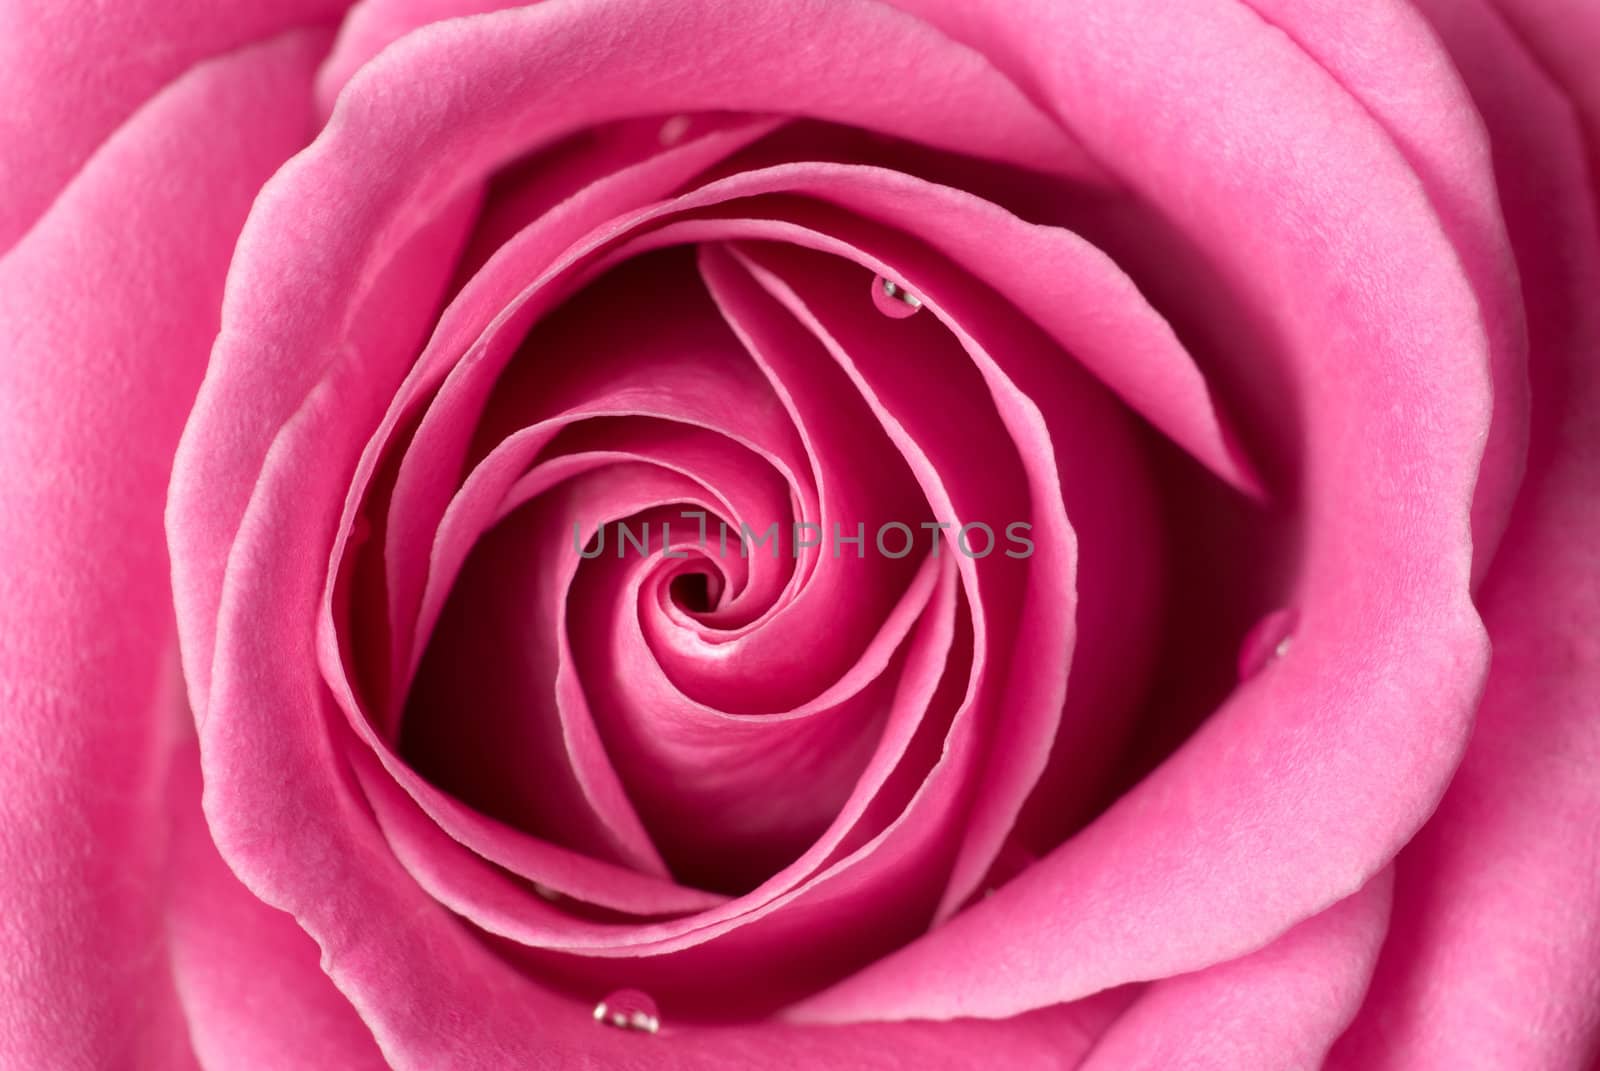 Pink rose detail. by Pietus